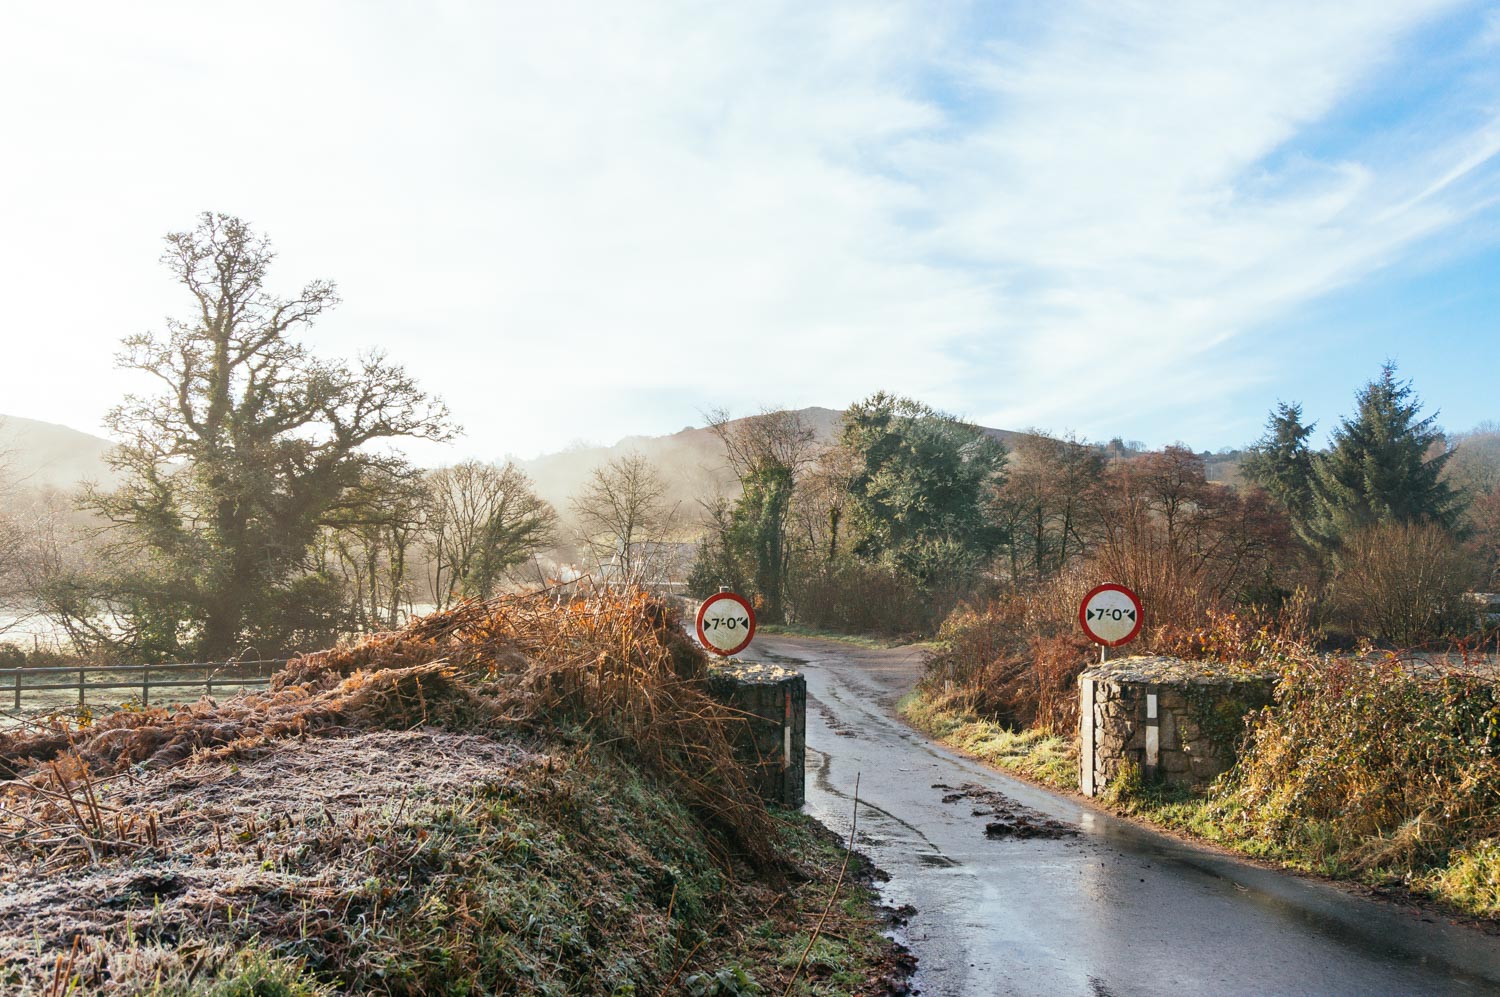 Road trip to Devon – Dartmoor